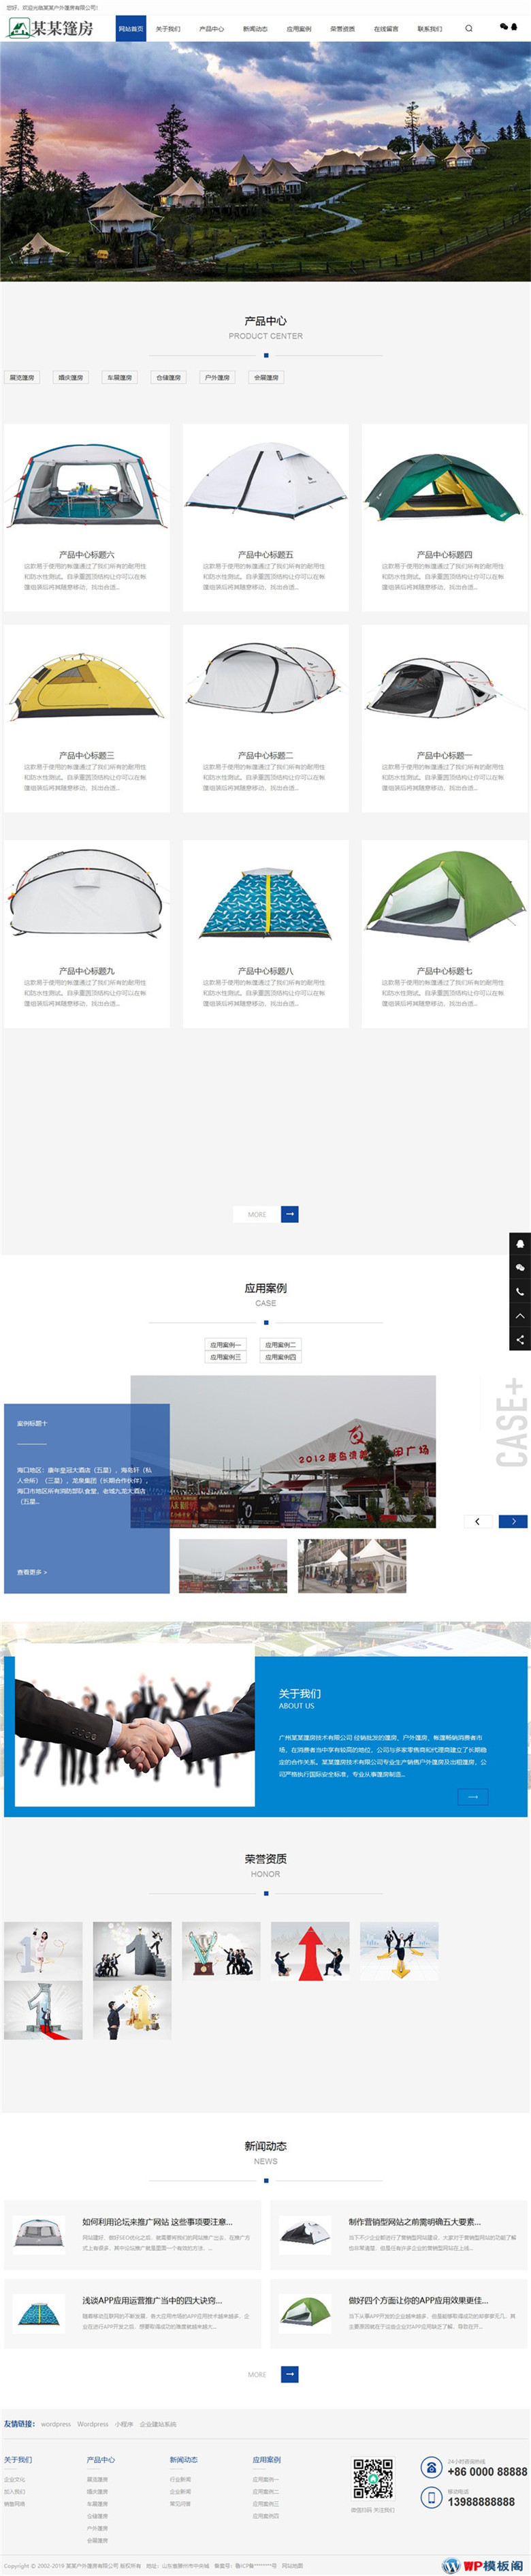 中英文双语户外篷房帐篷睡袋网站Wordpress模板主题演示图